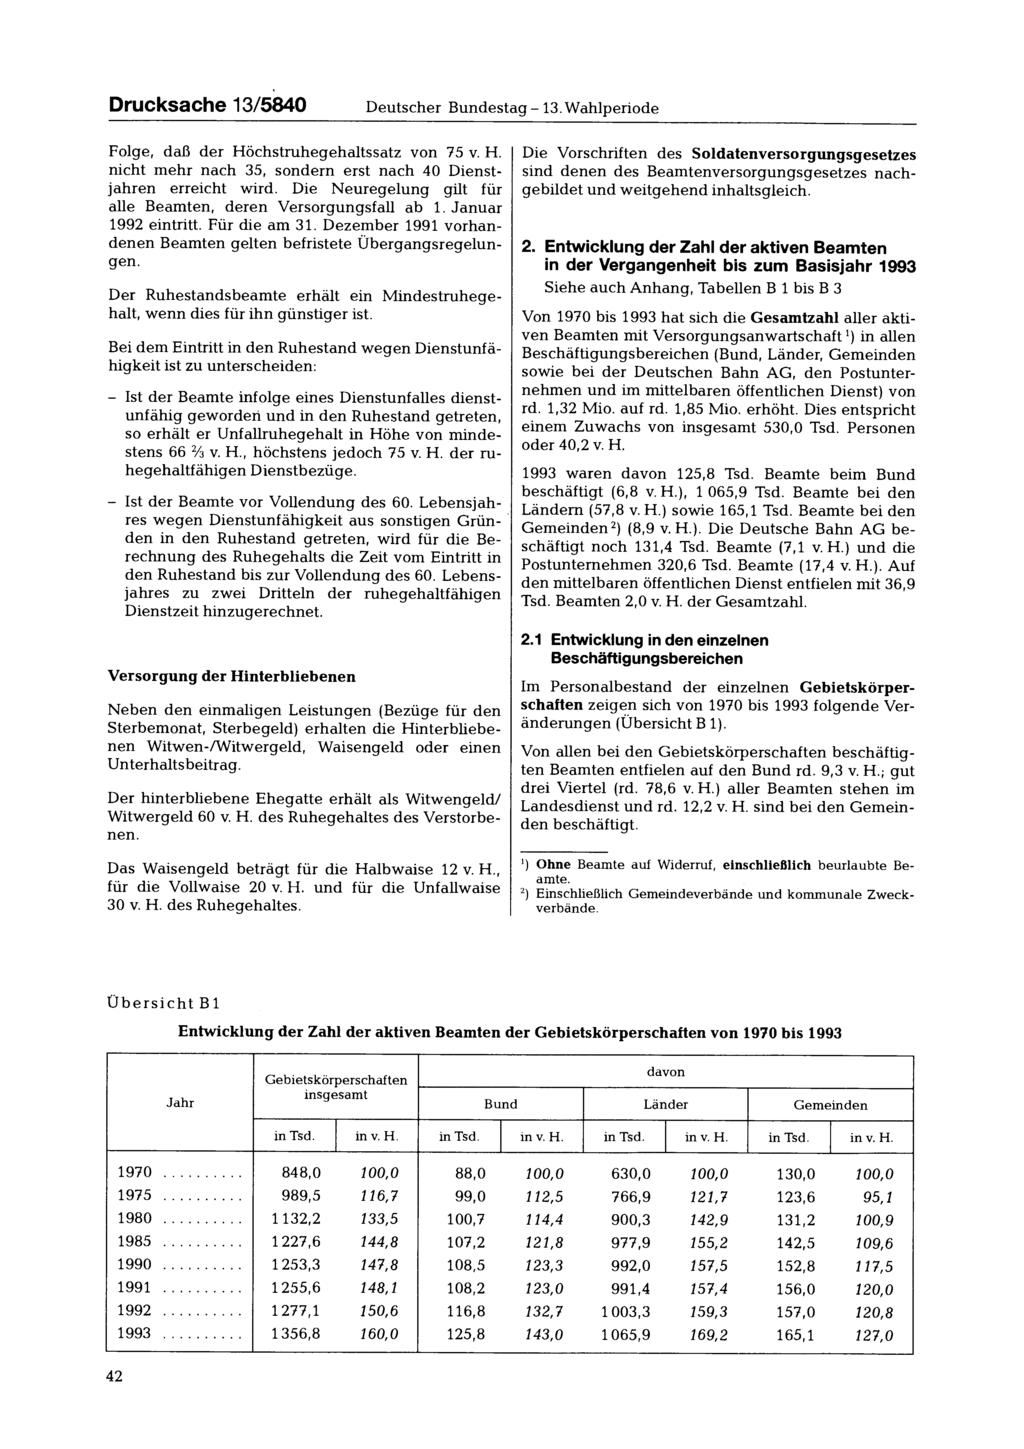 Drucksache 13/5840 Deutscher Bundestag -13. Wahlperiode Folge, daß der Höchstruhegehaltssatz von 75 v. H. nicht mehr nach 35, sondern erst nach 40 Dienstjahren erreicht wird.